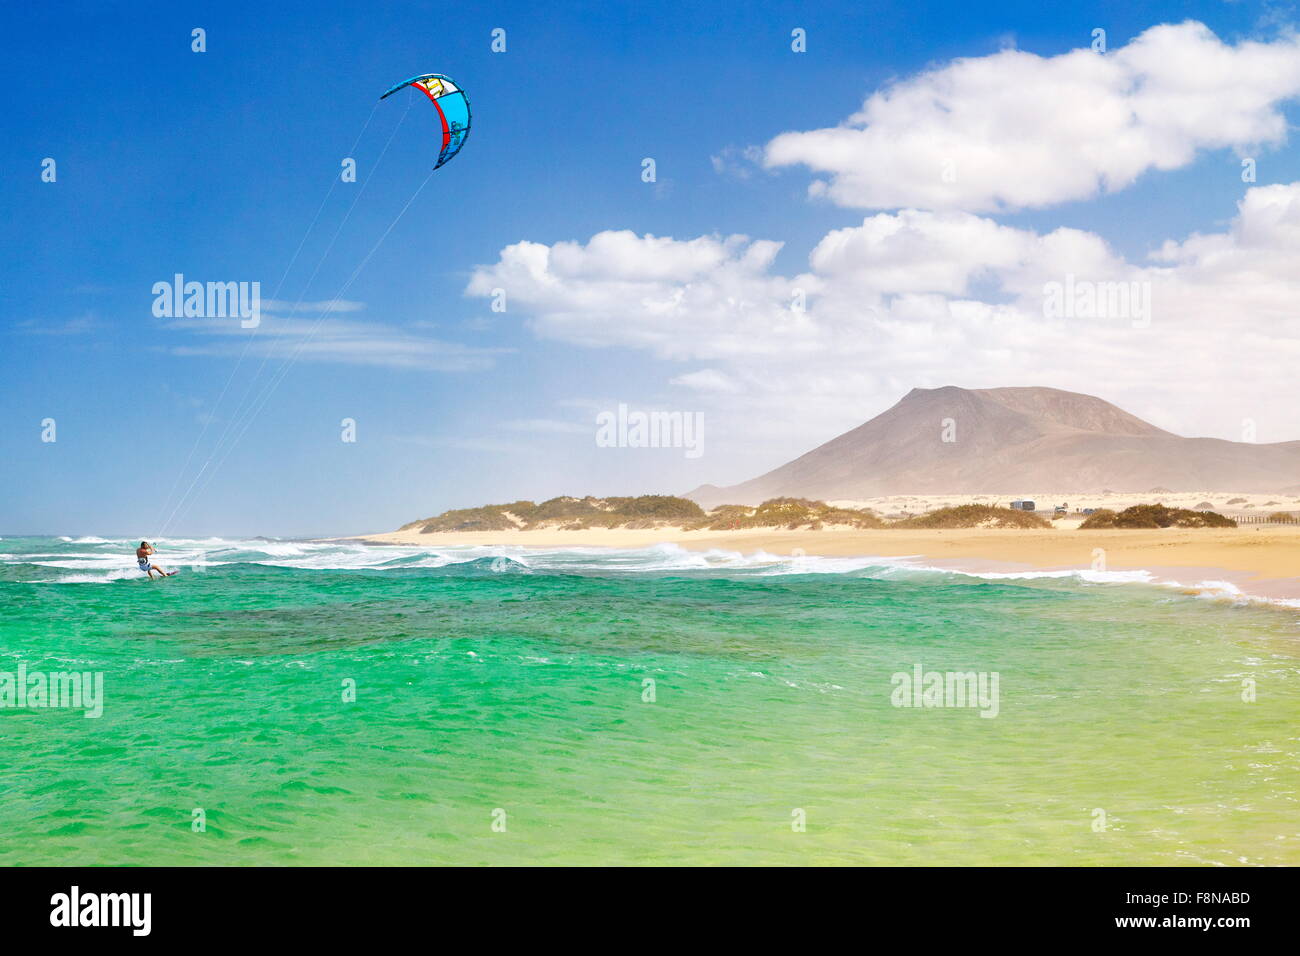 Kitesurfing at the beach near Corralejo, Fuerteventura Island, Canary Islands, Spain, Stock Photo